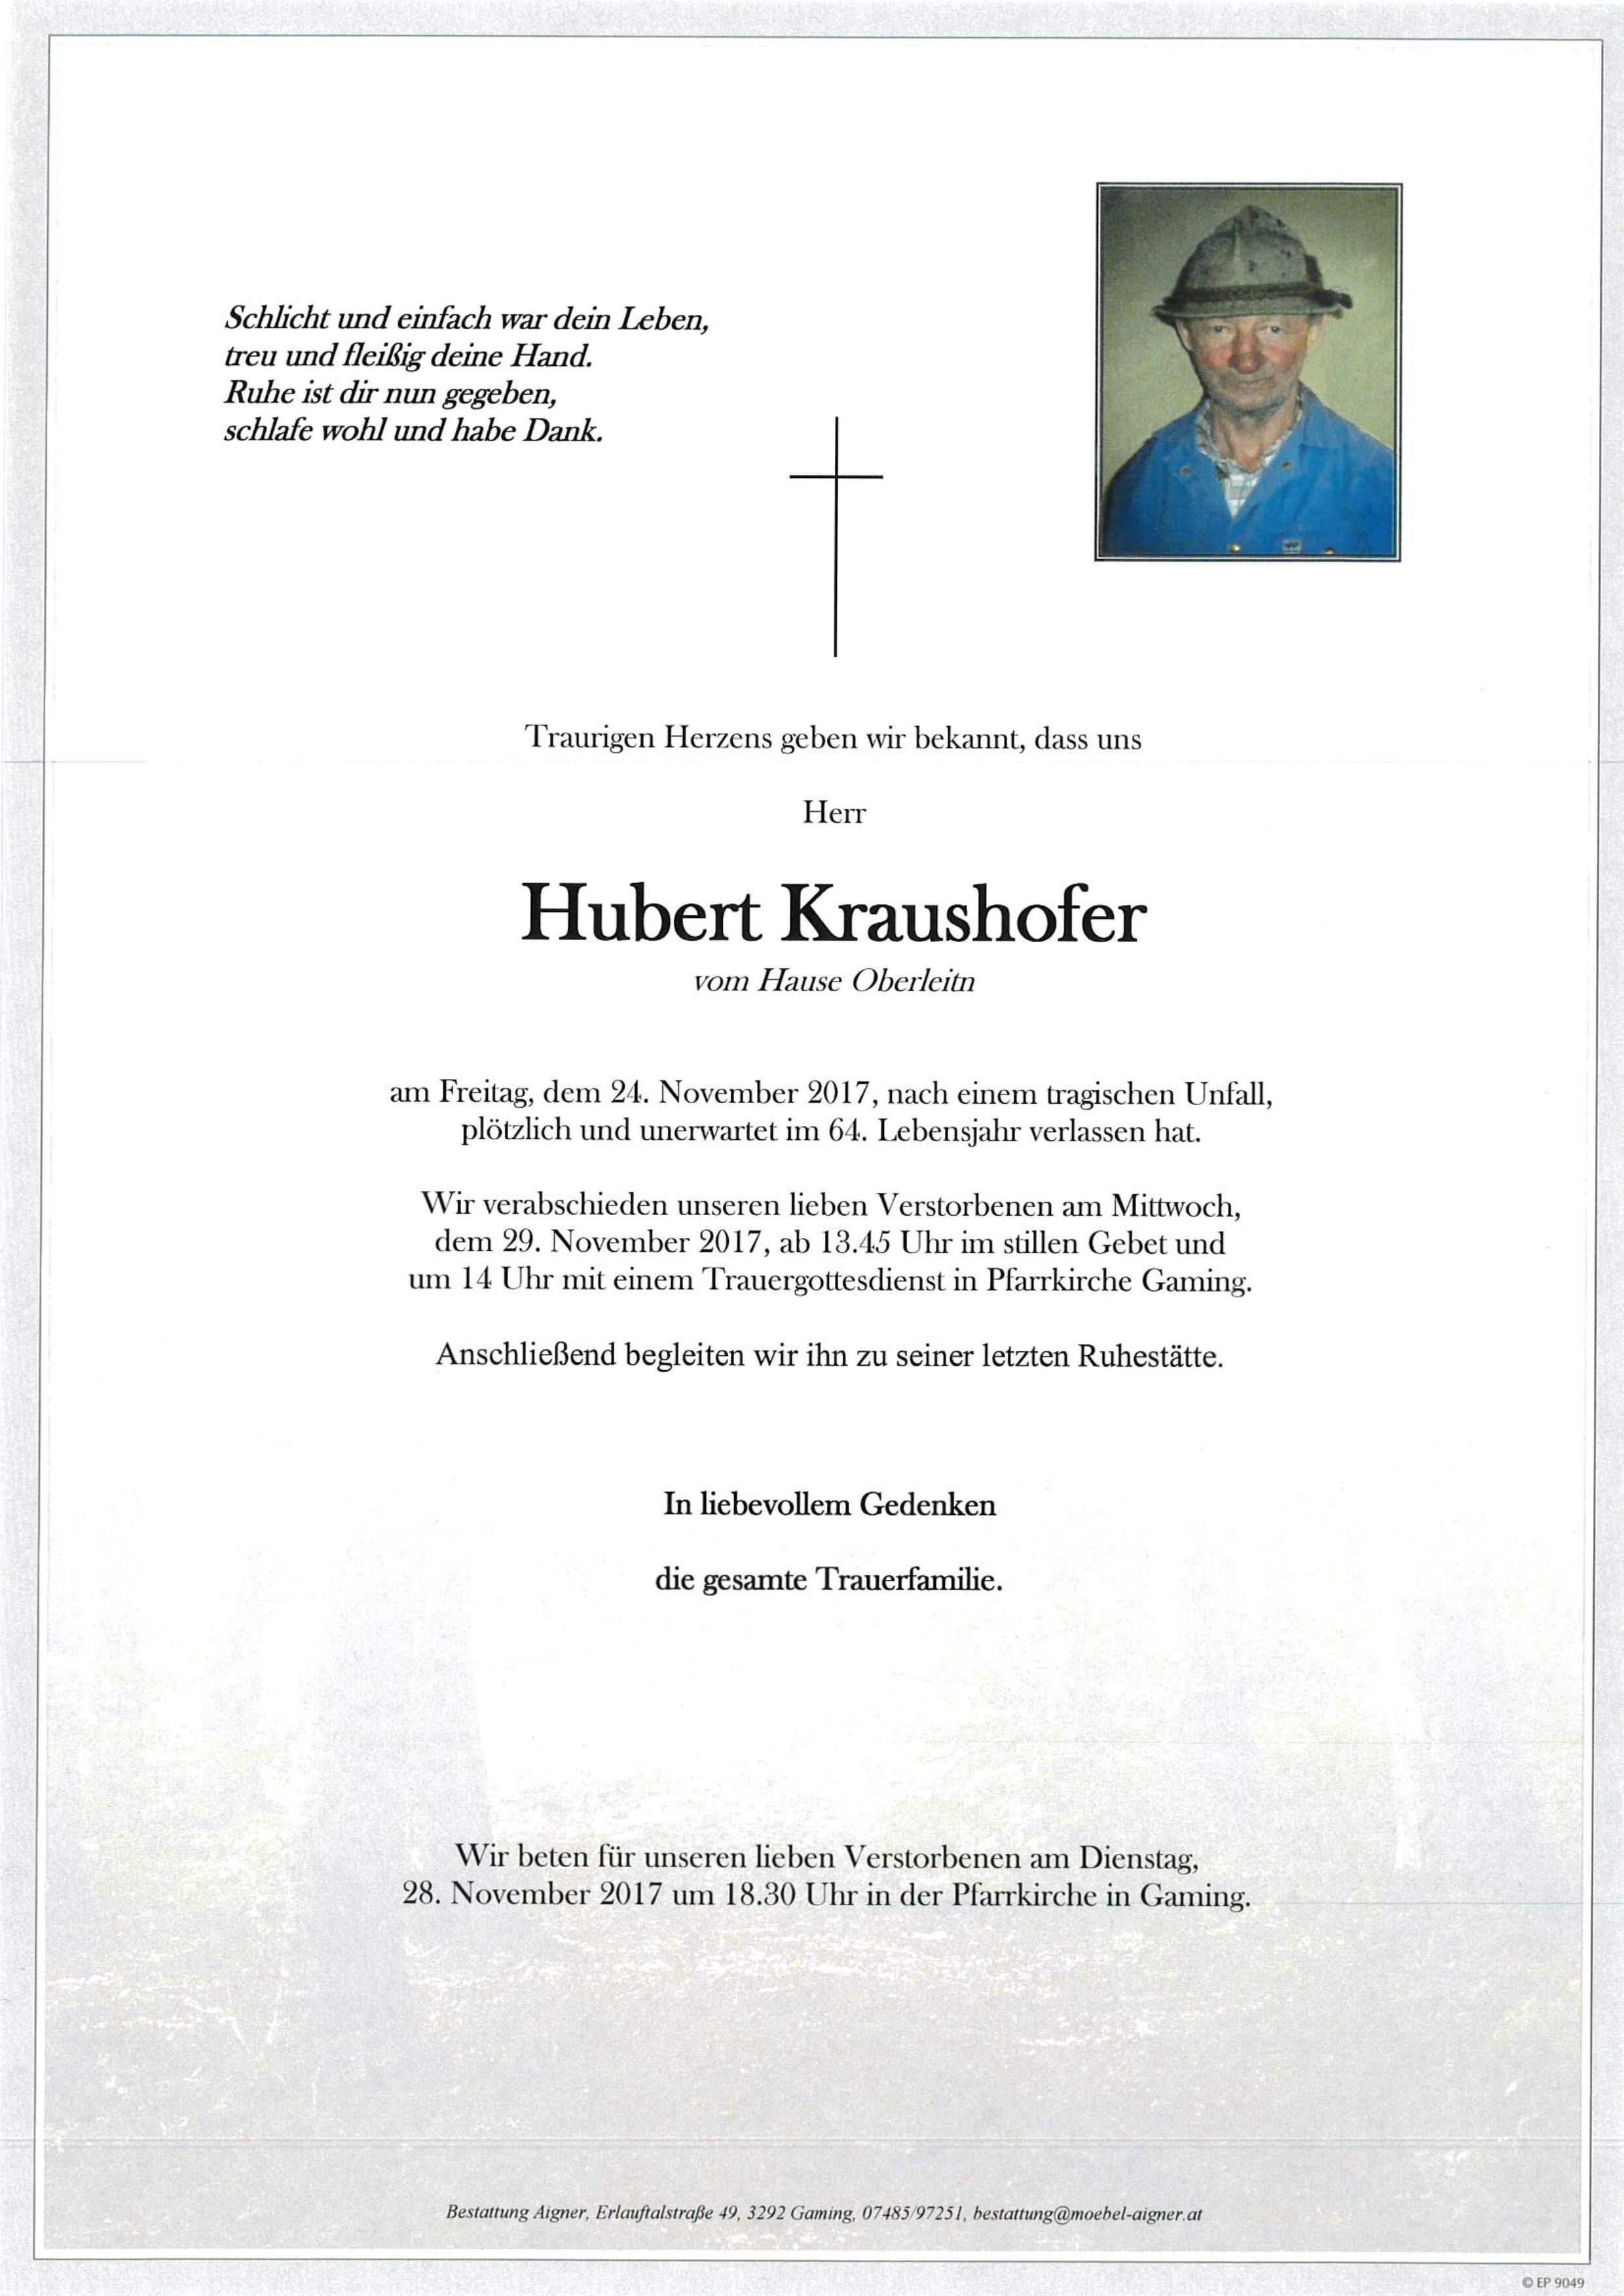 Hubert Kraushofer